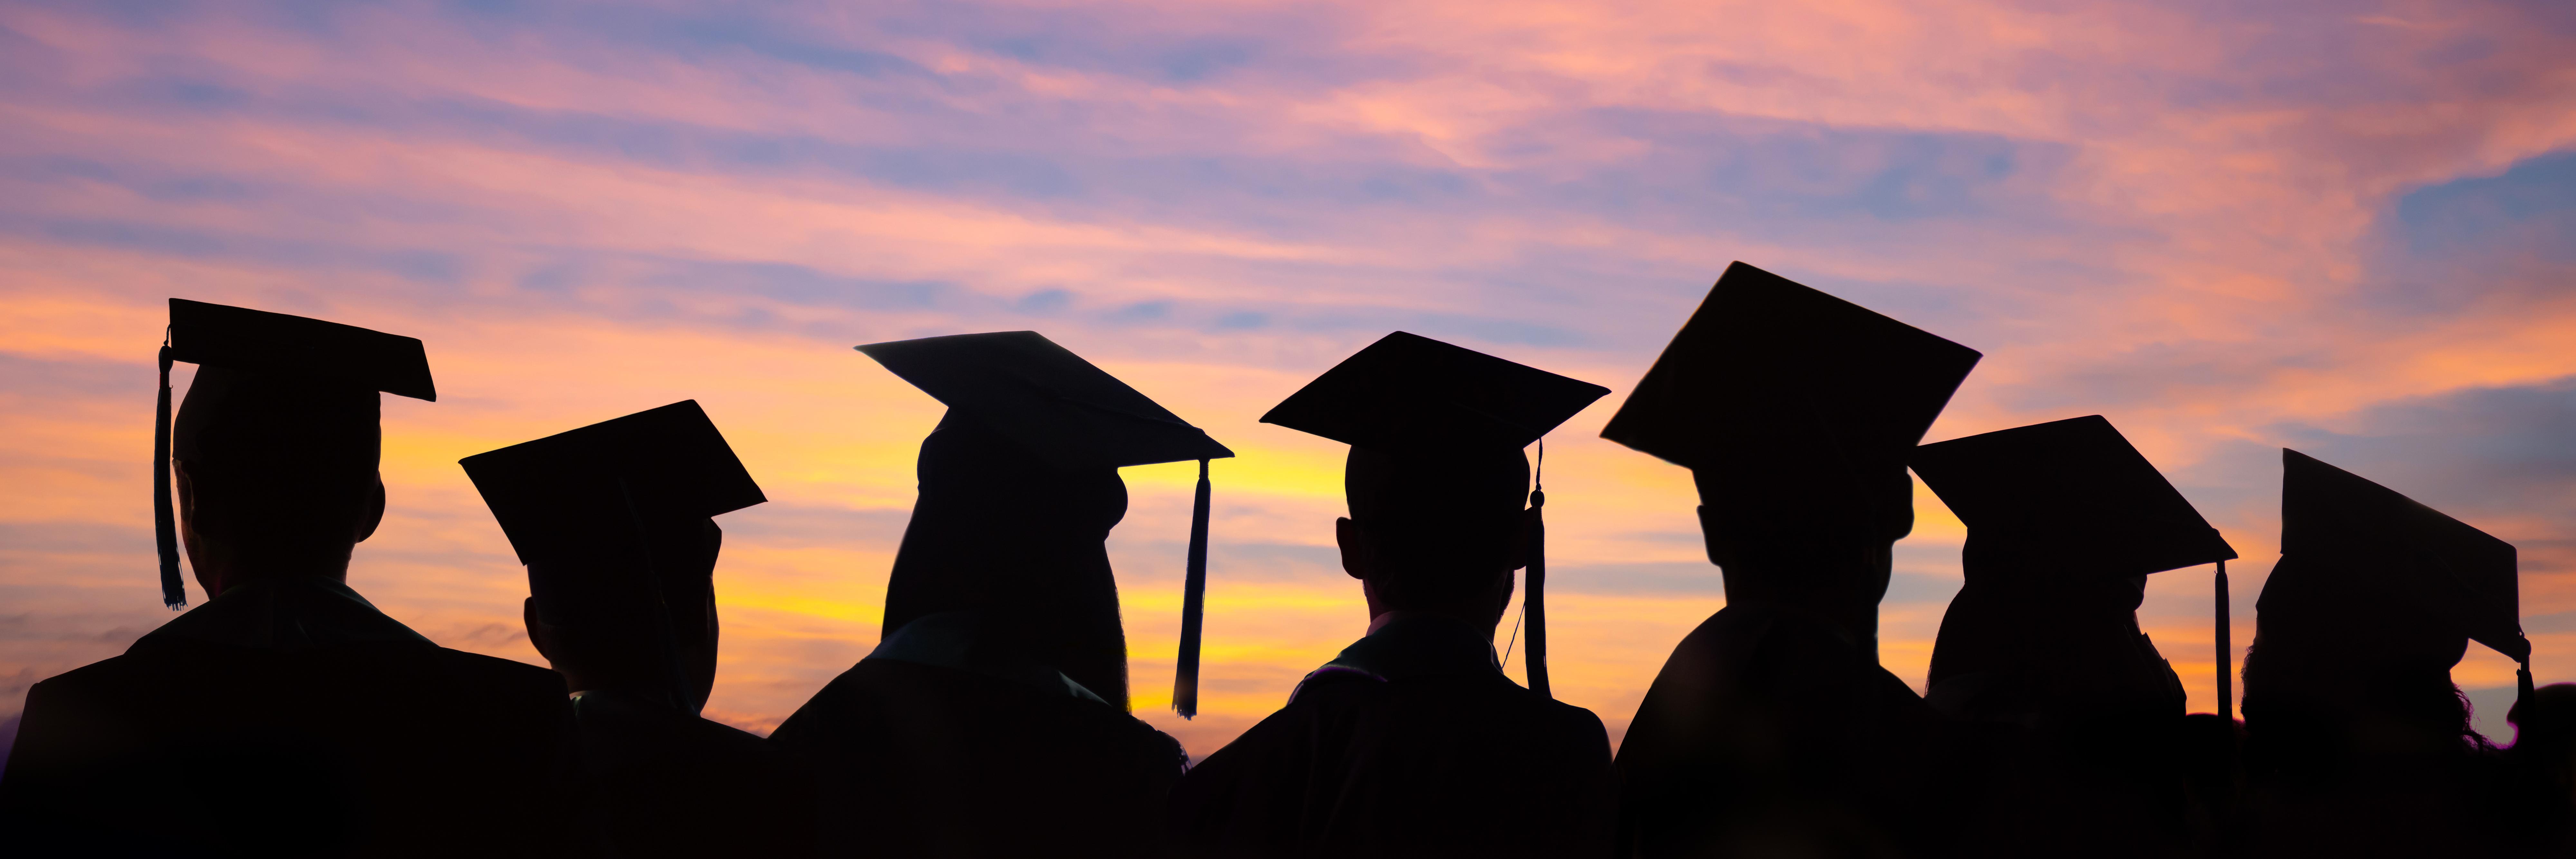 在夕阳的背景下，学生们戴着毕业帽排成一排. 大学毕业典礼的网页横幅.